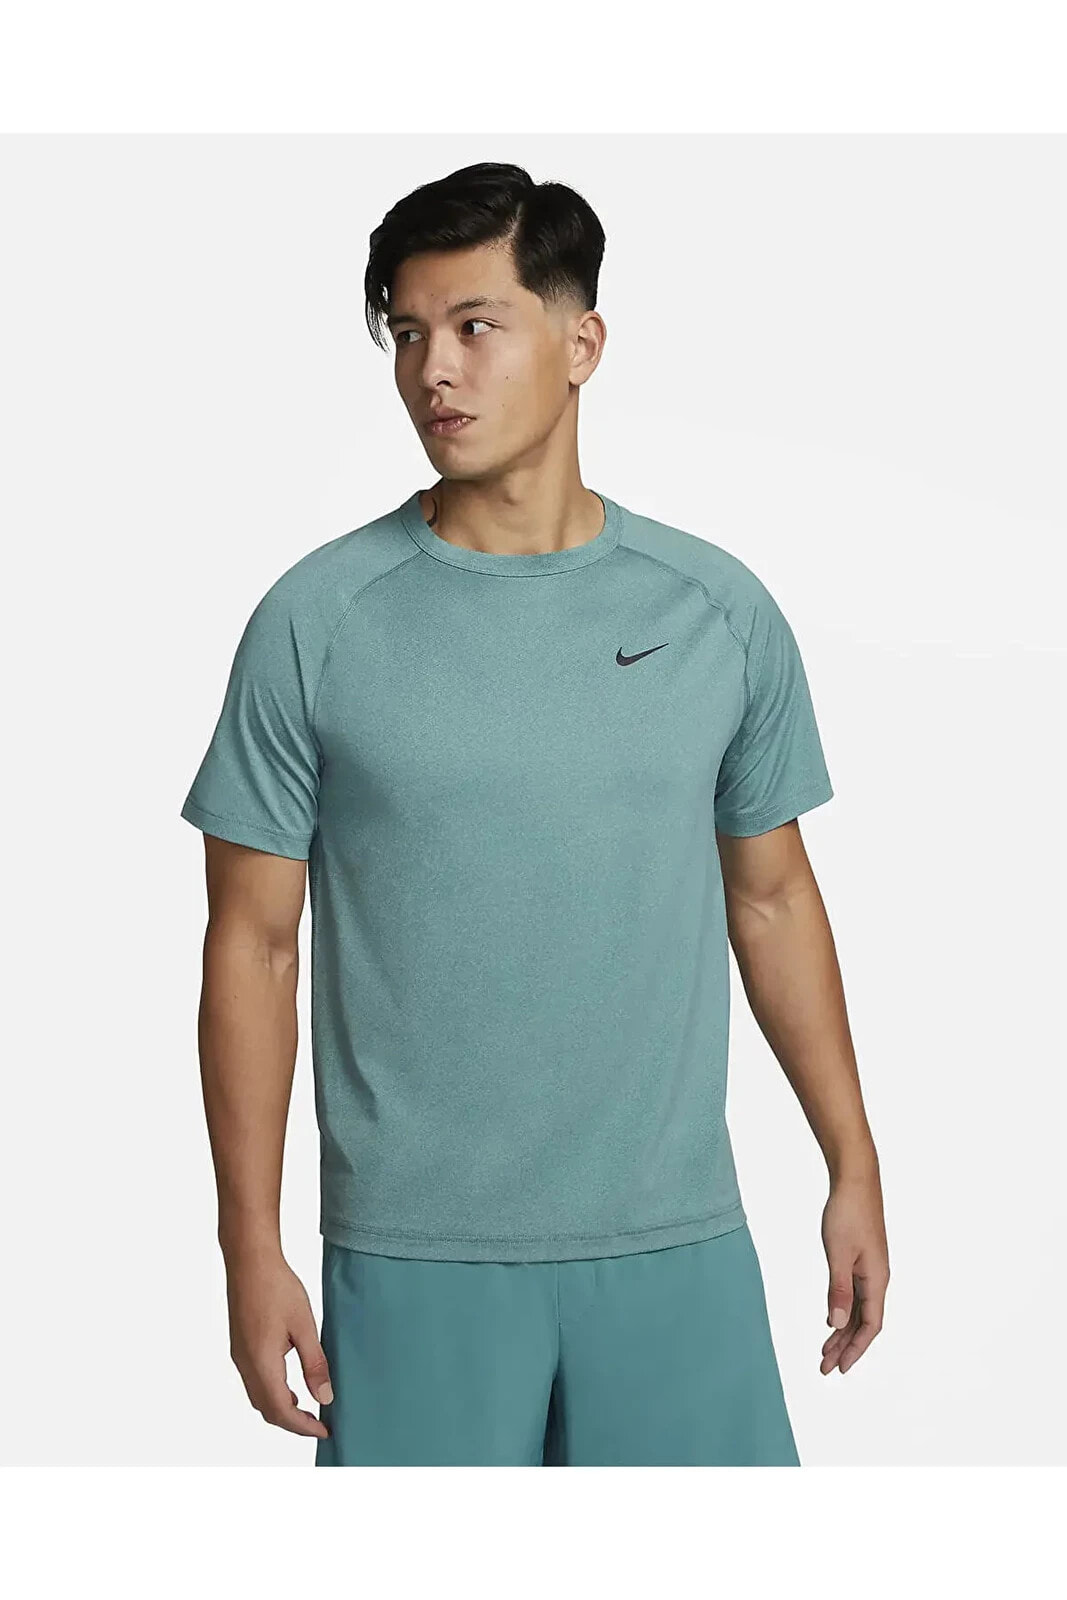 Dri-Fit Ready Erkek Yeşil T-Shirt DV9815-379